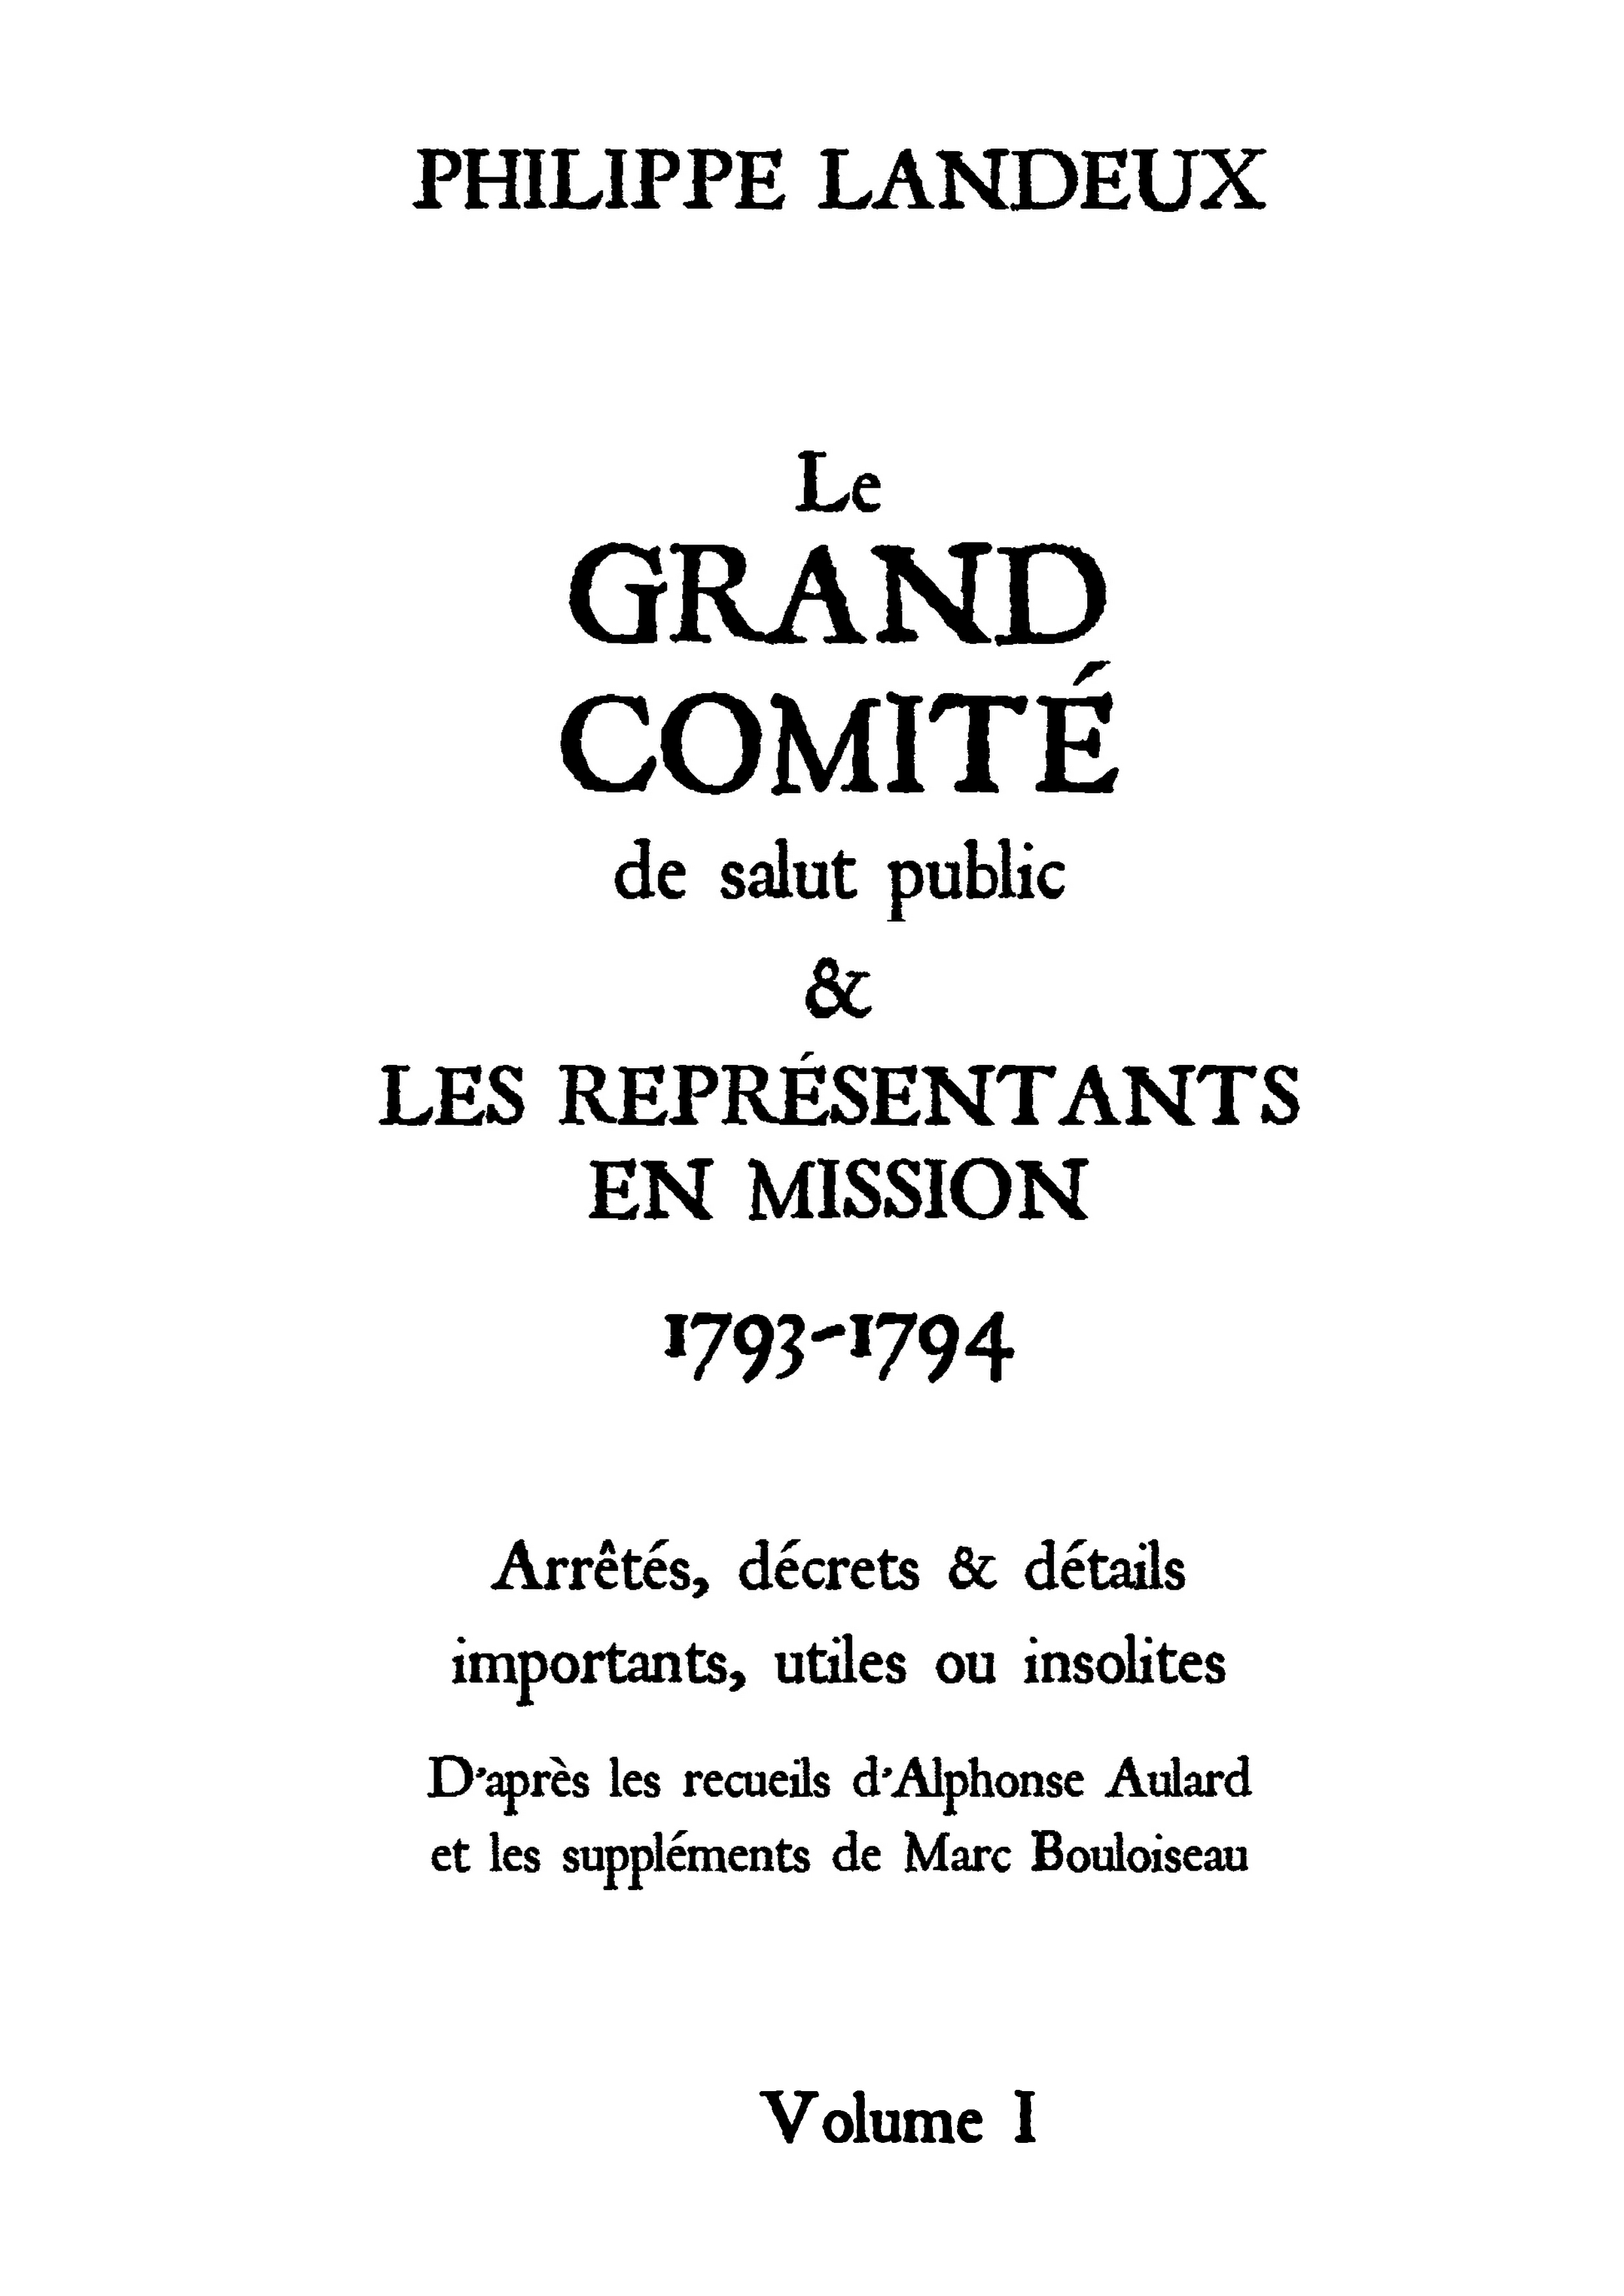 Le Grand comité (Volume I)